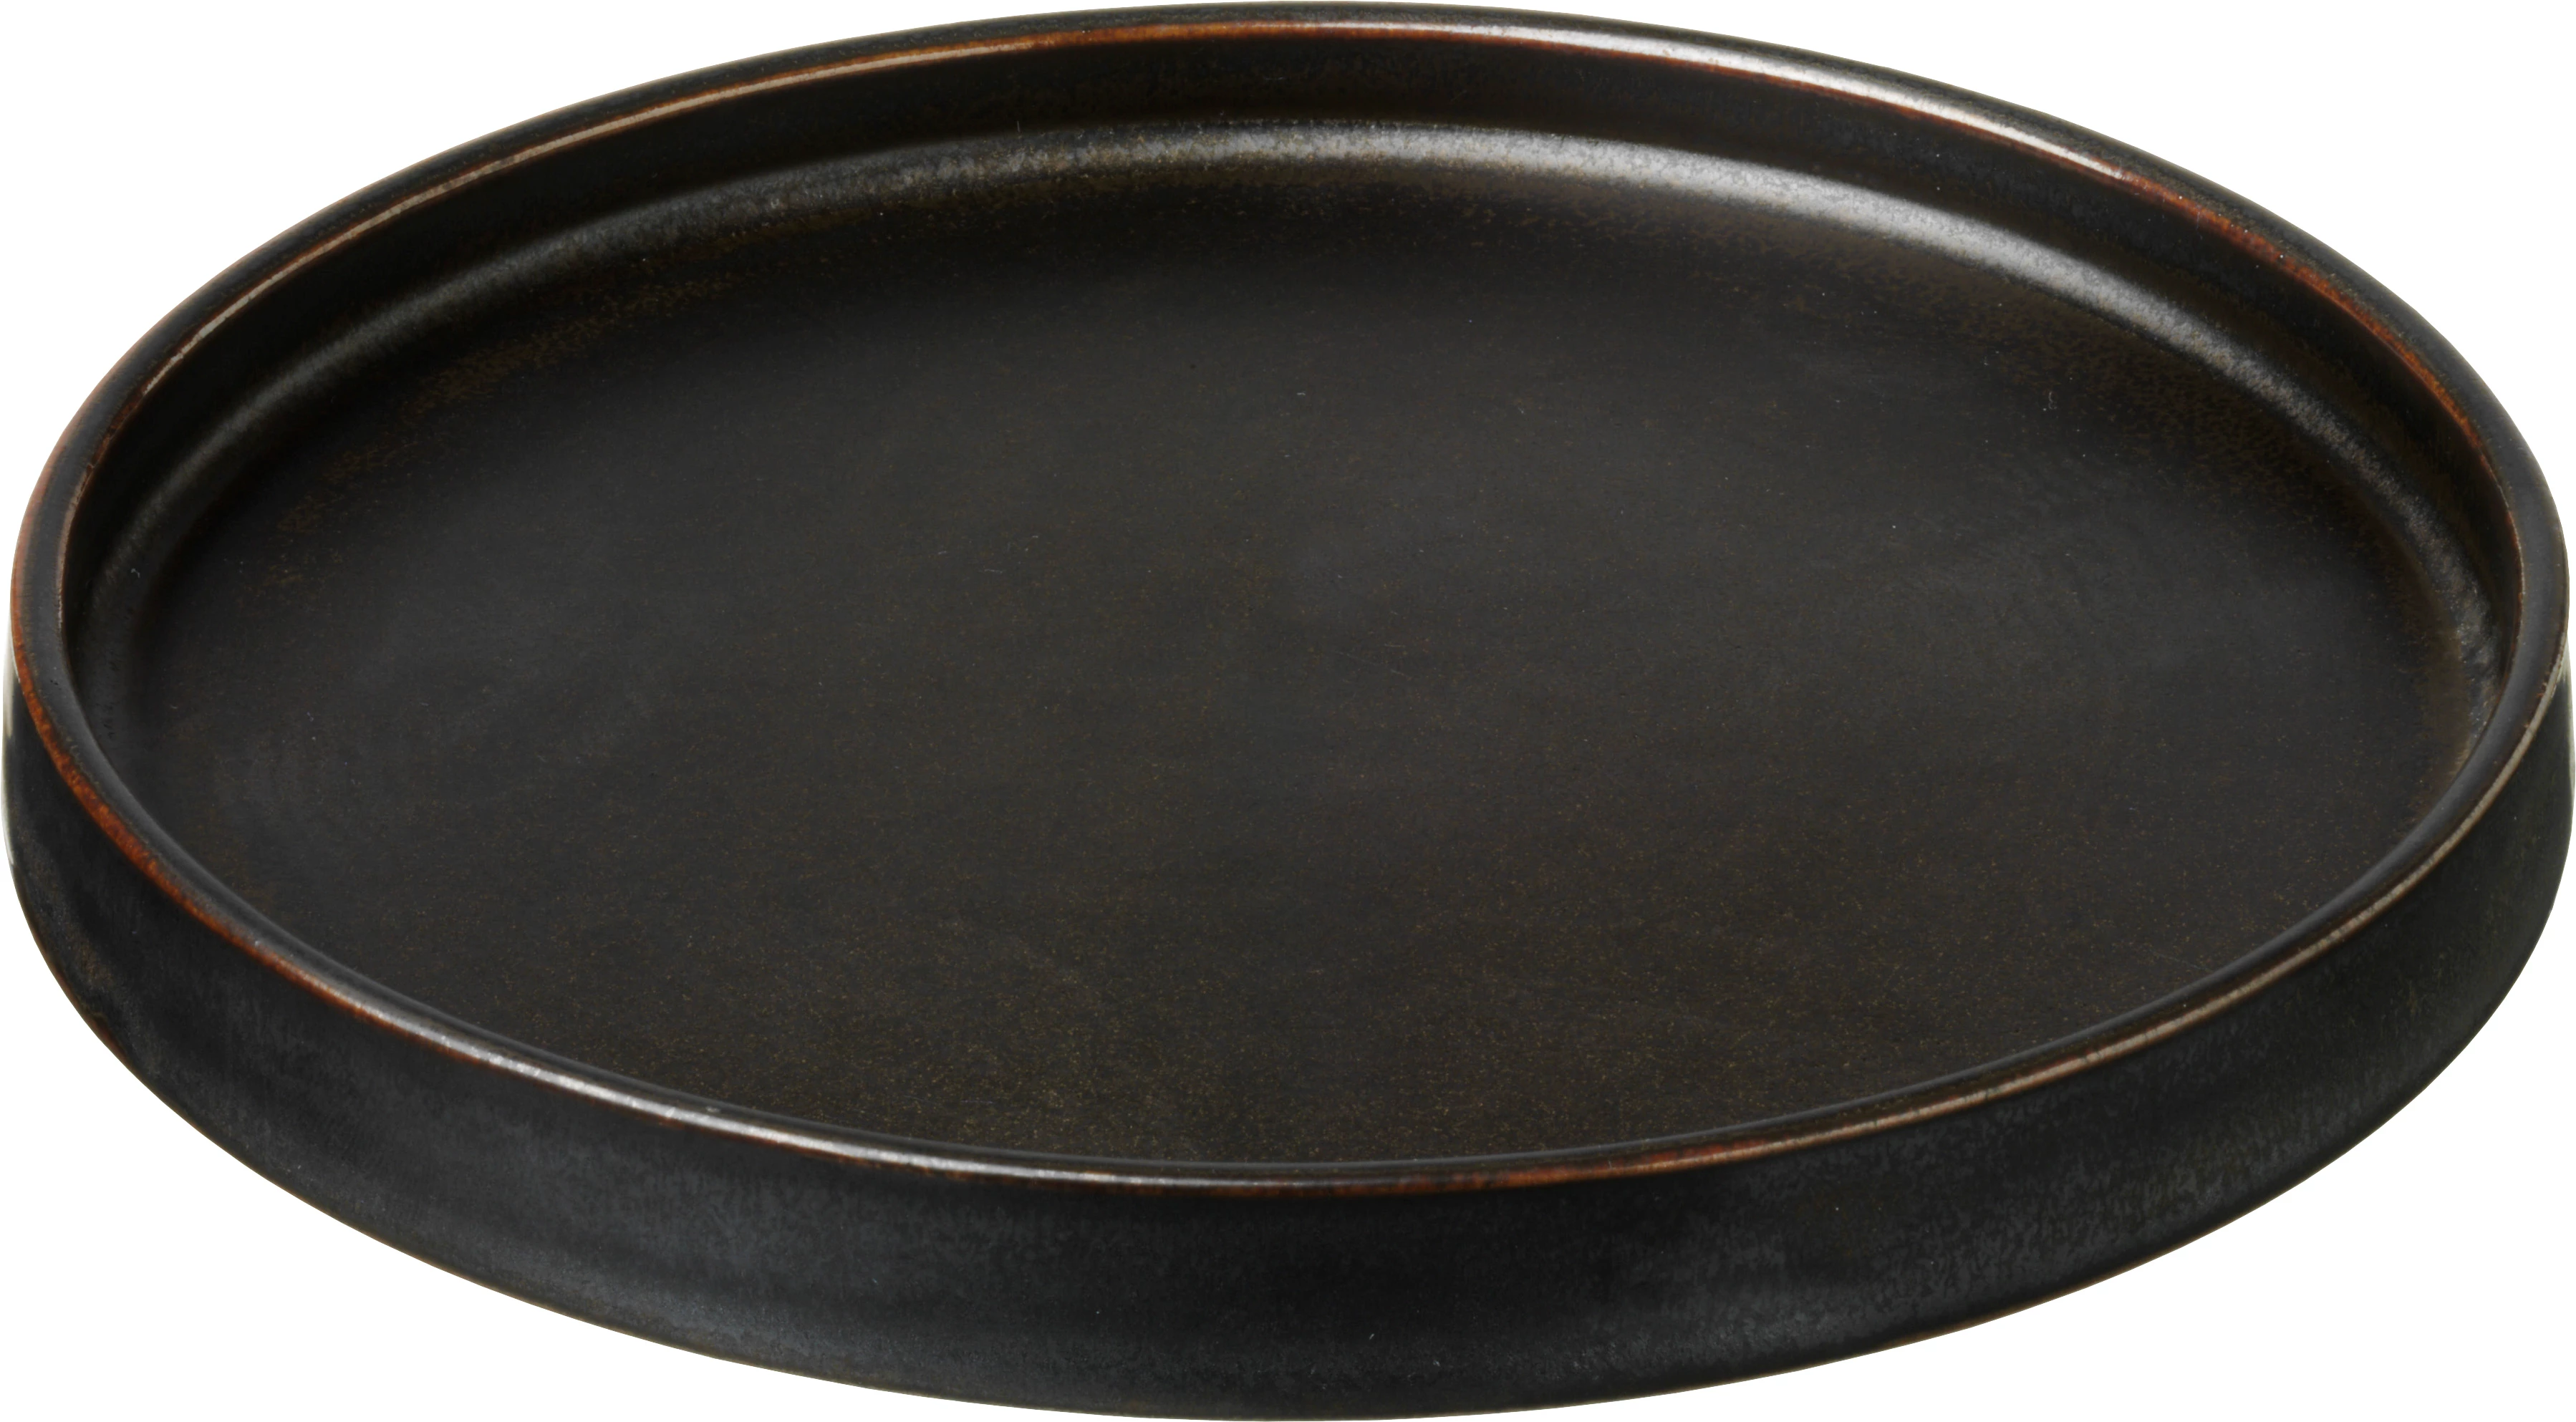 Savannah flad tallerken uden fane, brun, ø14 cm